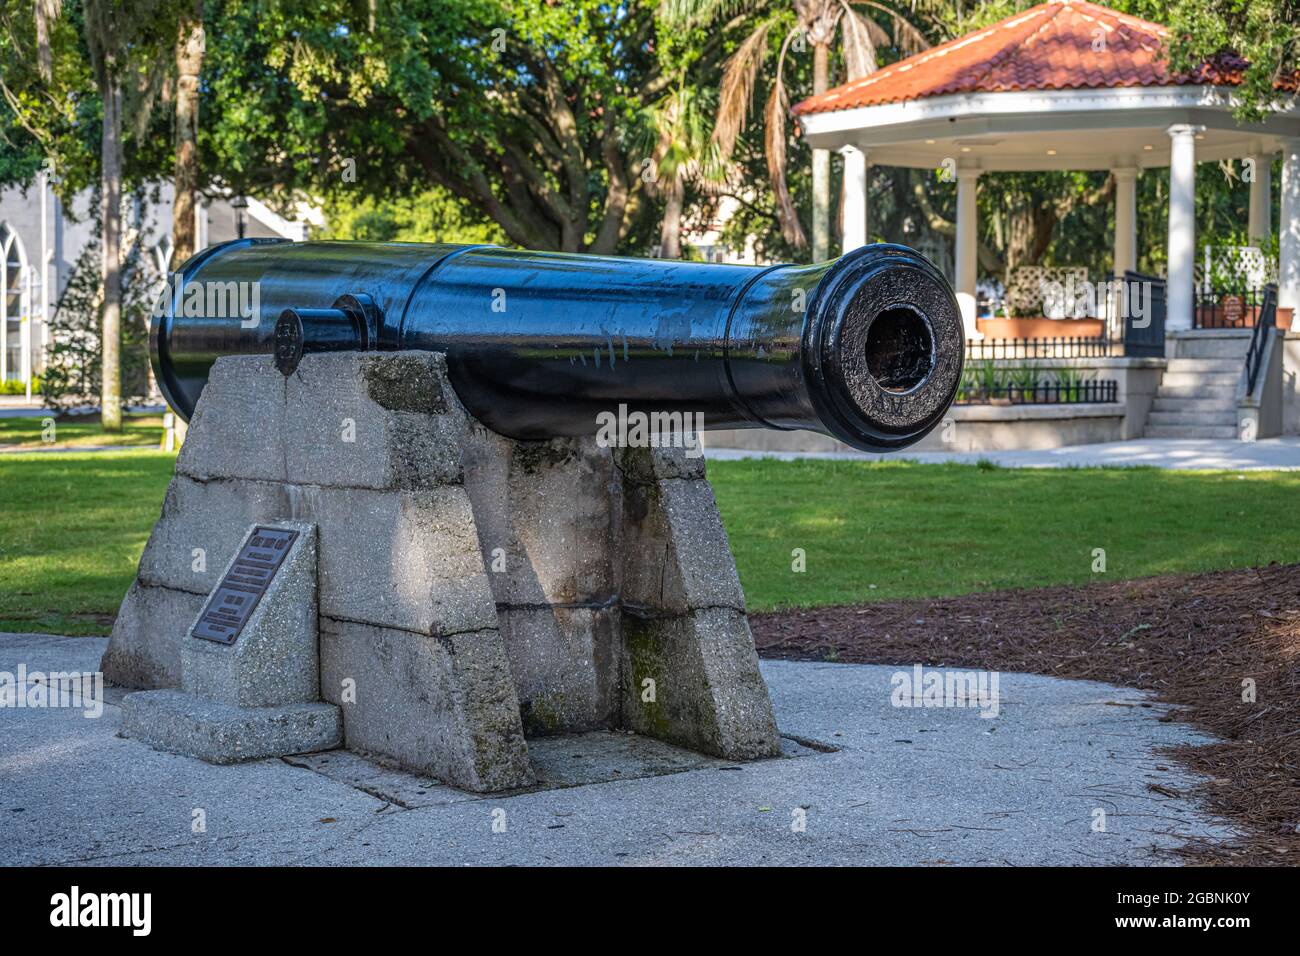 Mostra di cannoni in Plaza de la Constitucion, il più antico parco pubblico degli Stati Uniti, nella città vecchia di St. Augustine, Florida. (STATI UNITI) Foto Stock